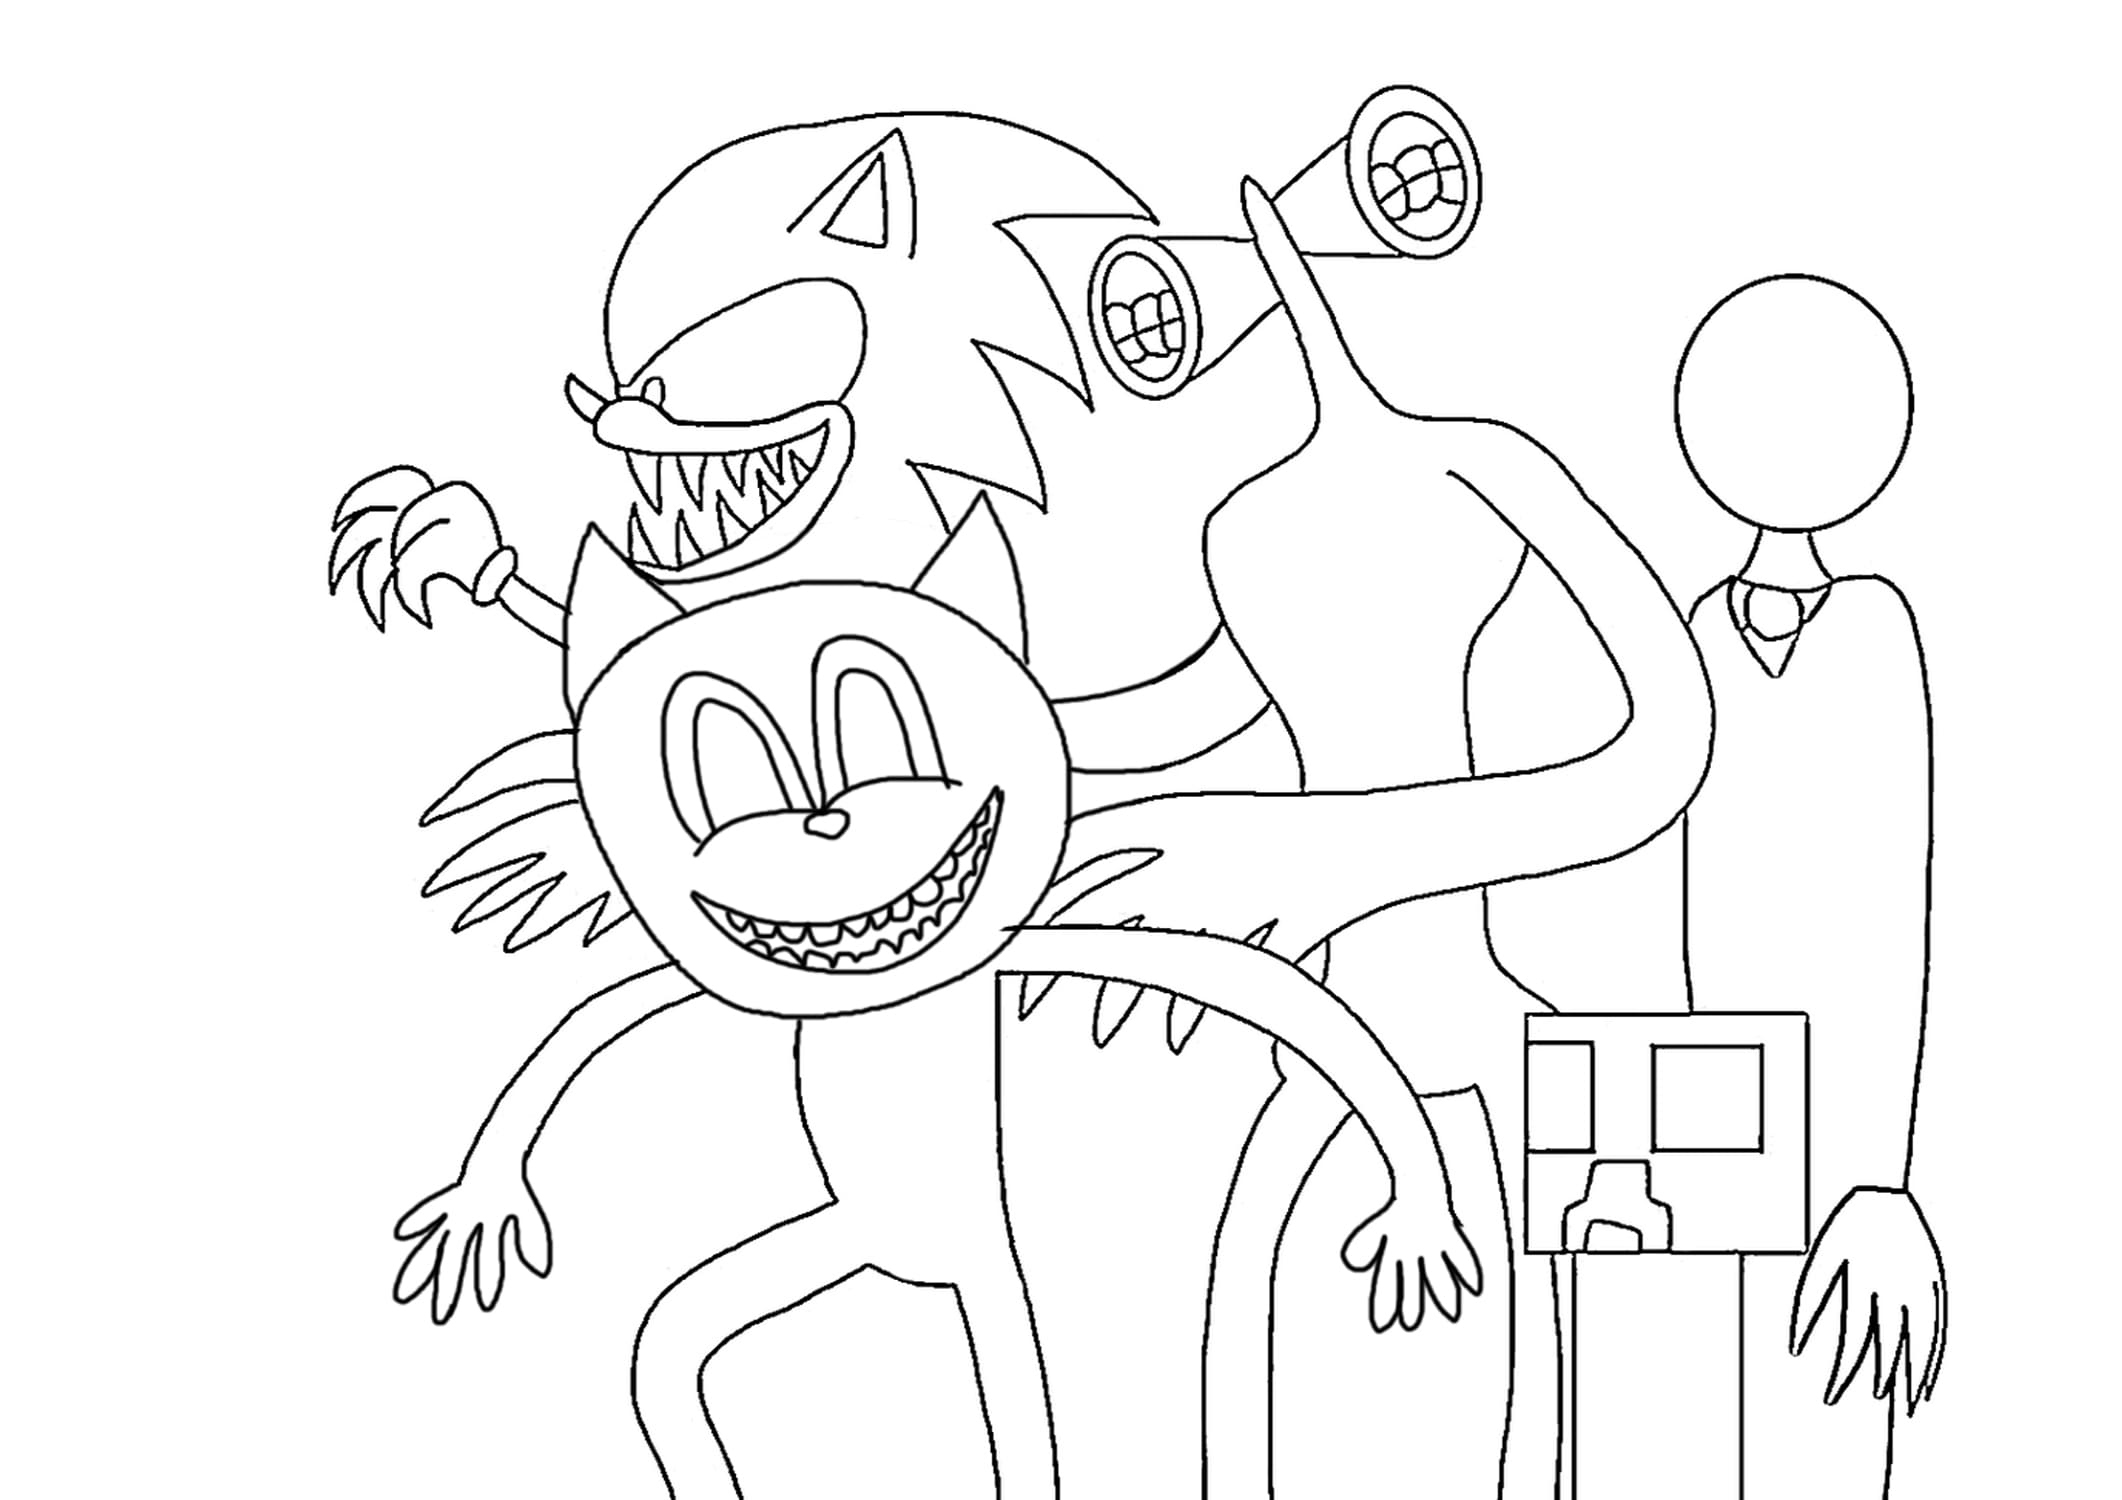 Para Colorear Cartoon Cat , Siren head, Sonic, Creeper y Slenderman son los principales monstruos